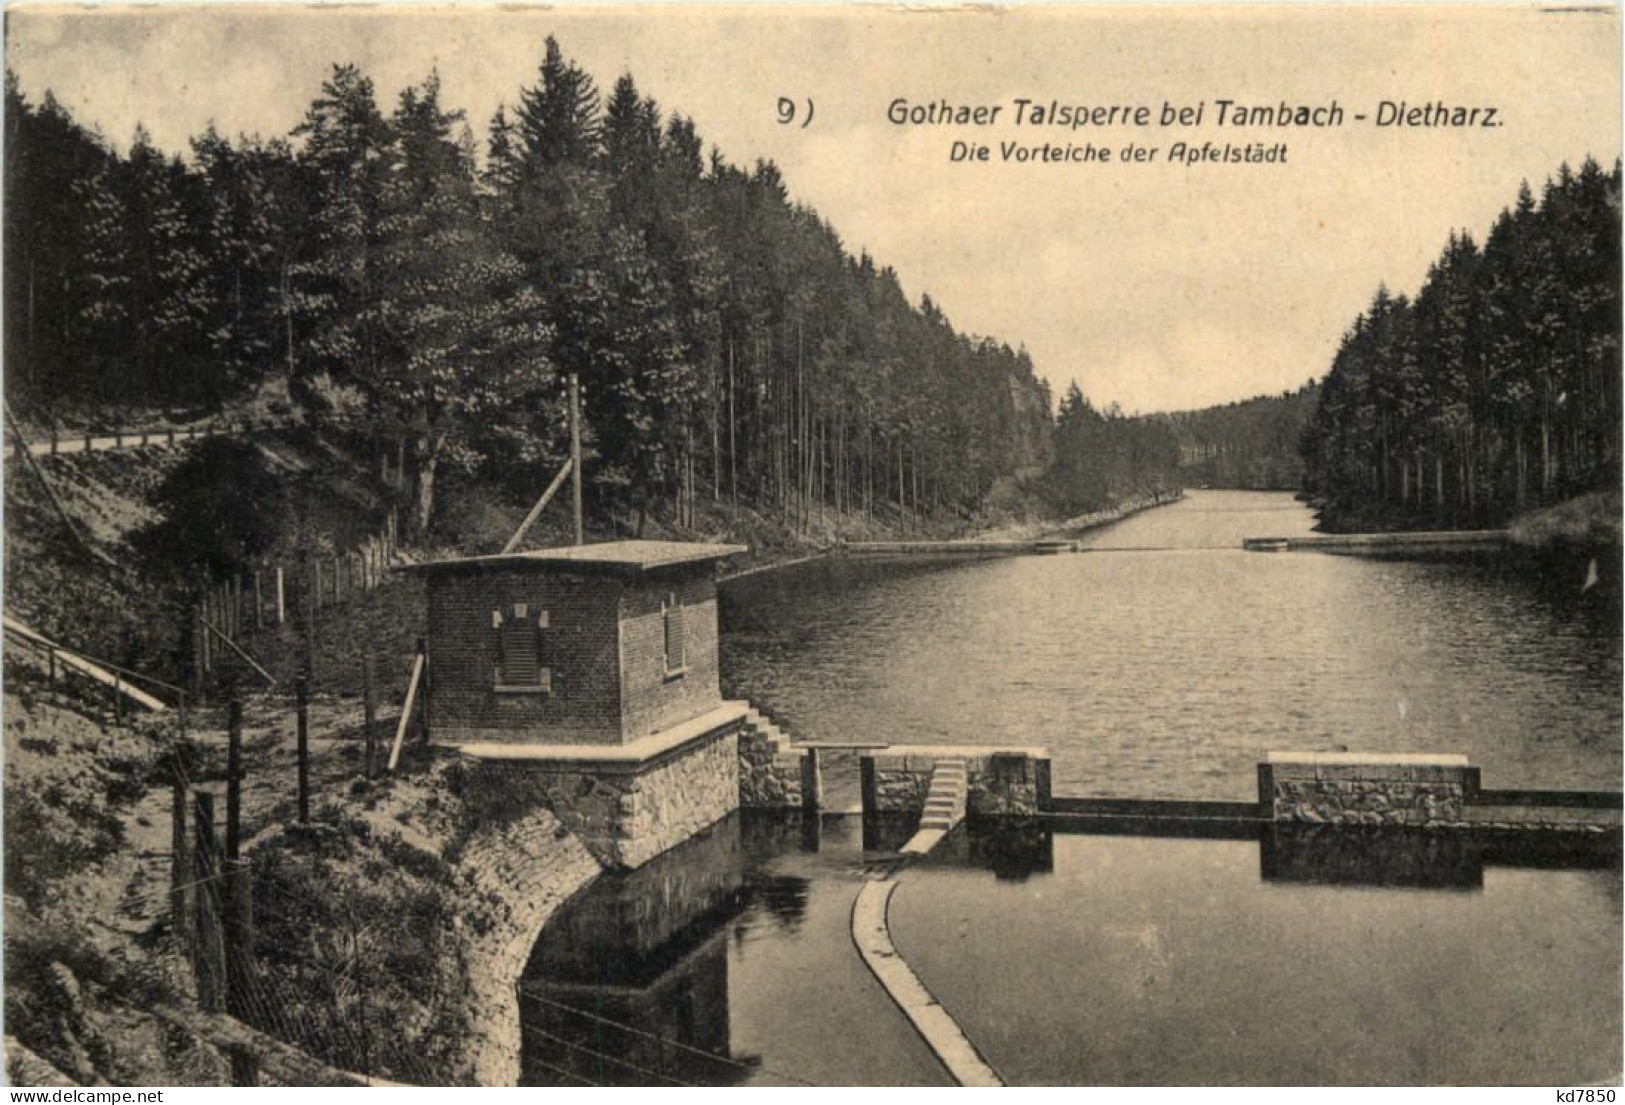 Tambach - Dietharz, Gothaer Talsperre - Tambach-Dietharz